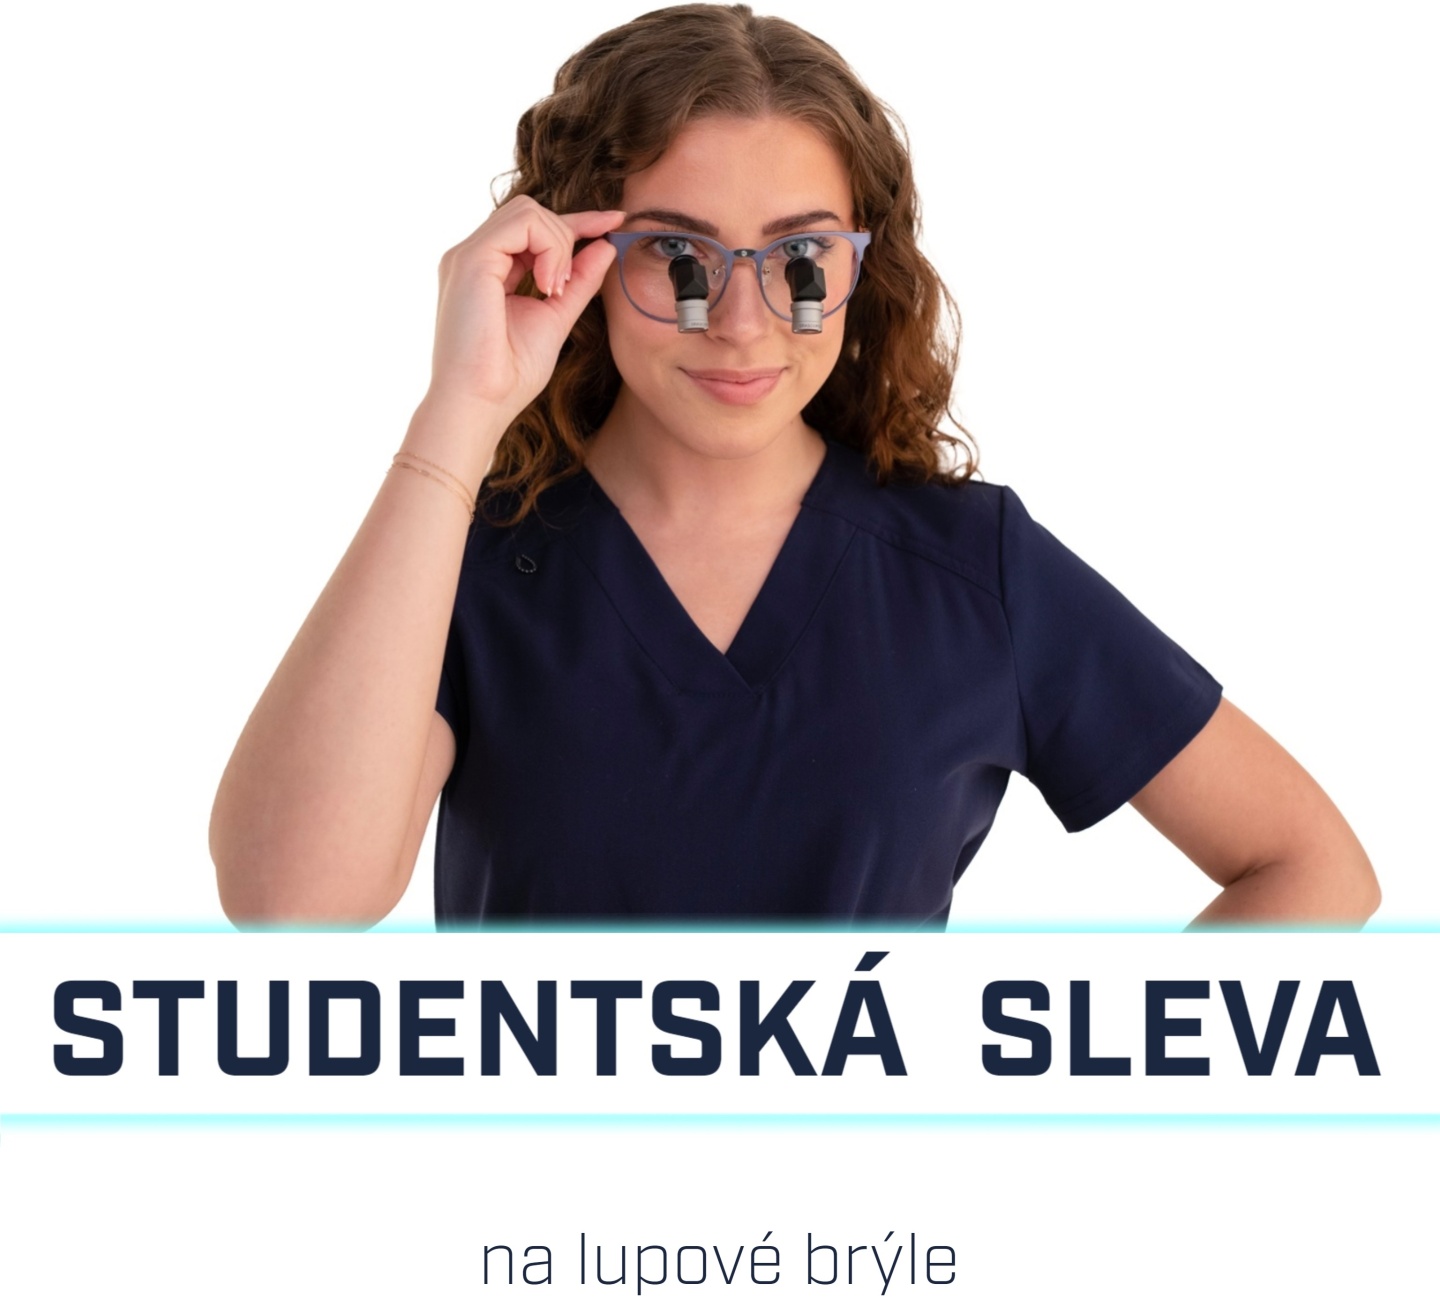 Studentská sleva na lupové brýle